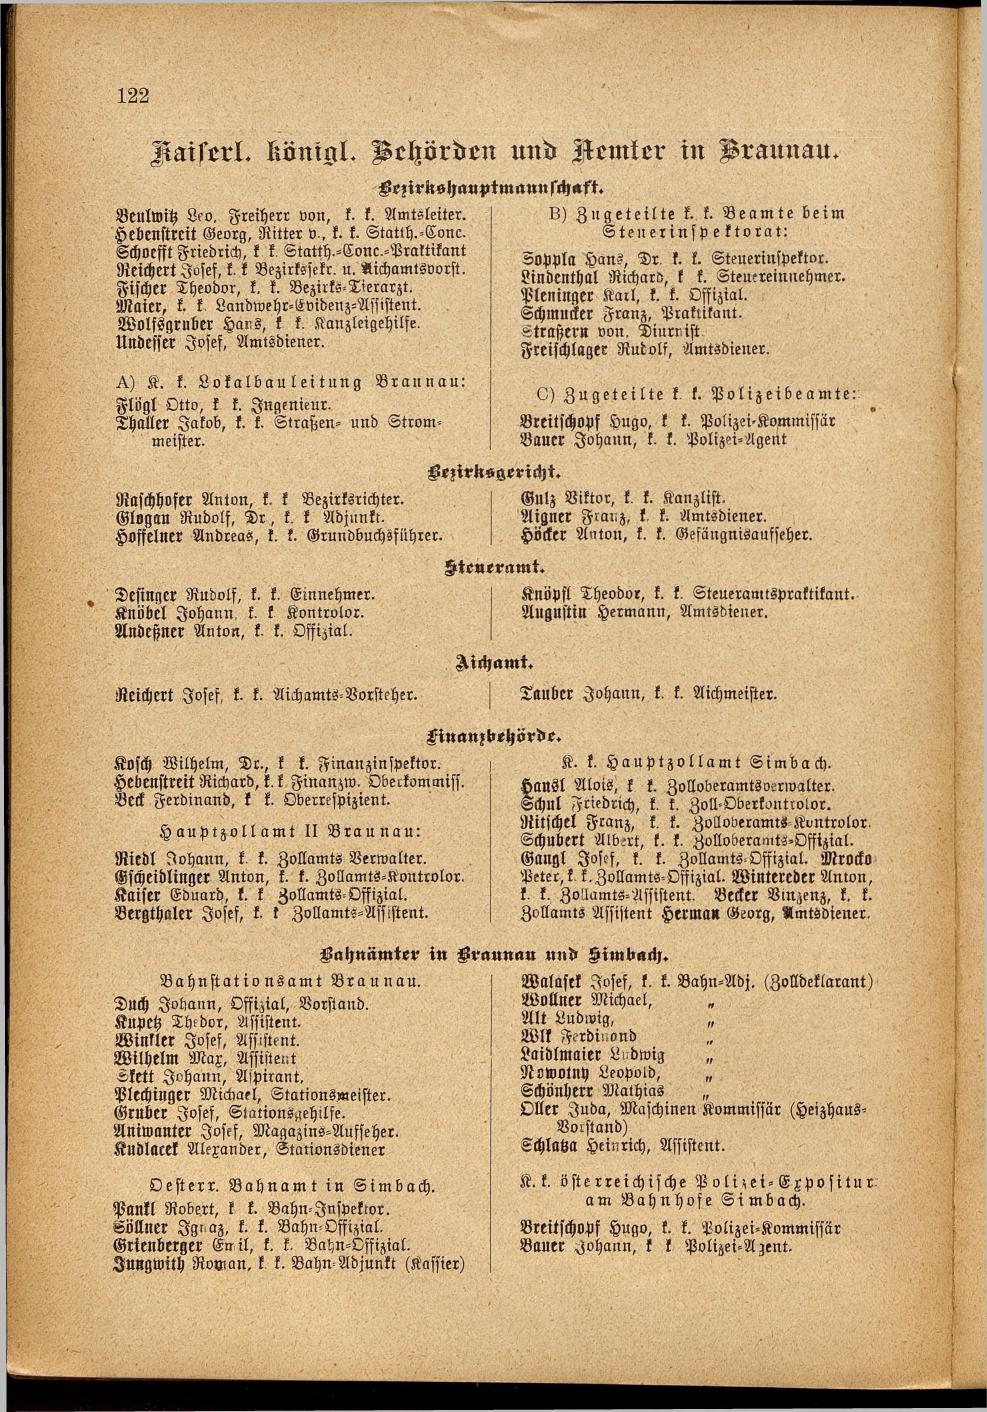 Illustrierter Braunauer-Kalender für das Jahr 1904 - Seite 126